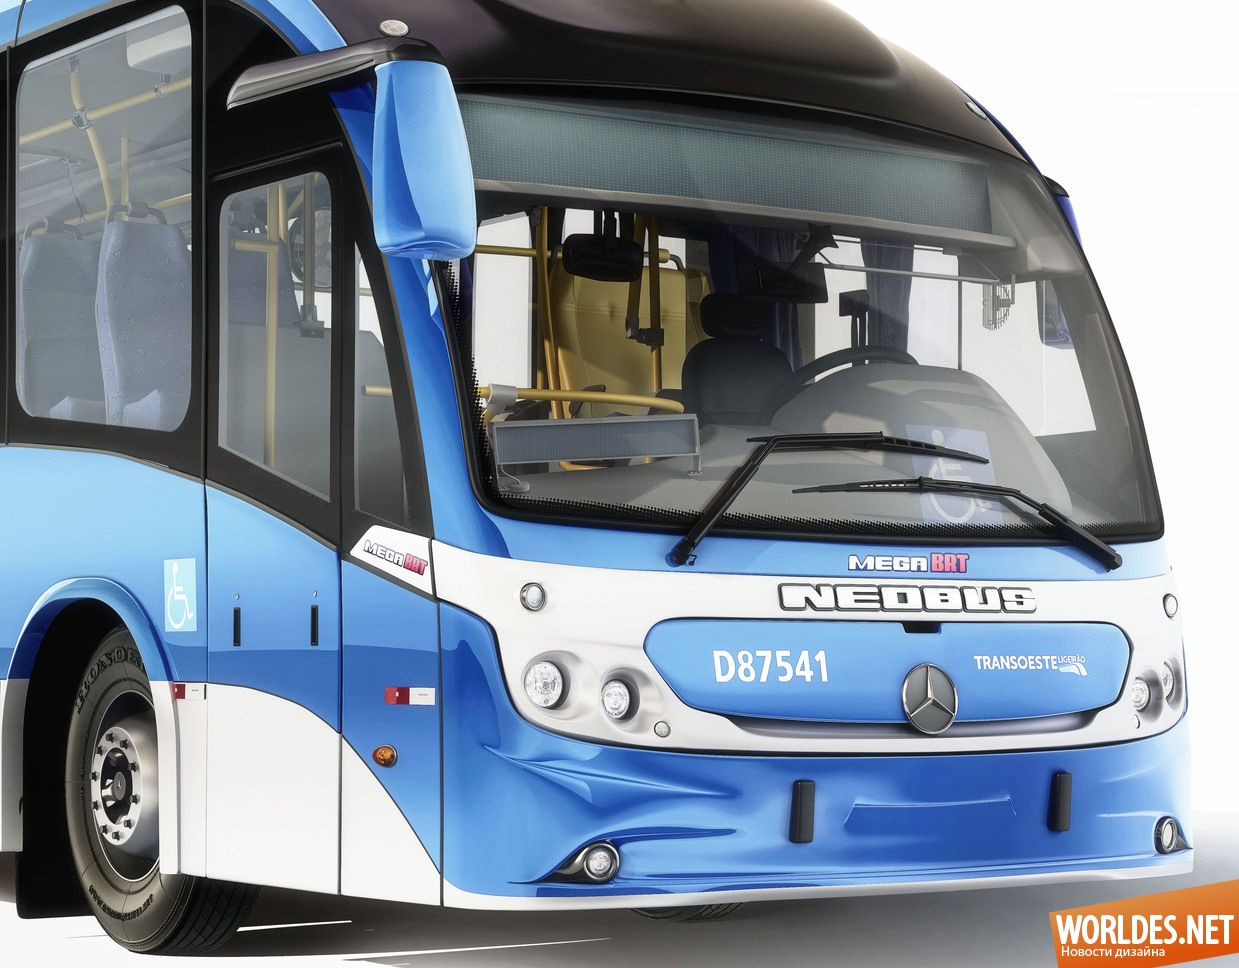 автобусы для рио, дизайн автобусов для рио, транспорт в рио, новый транспорт в рио, новые автобусы в рио